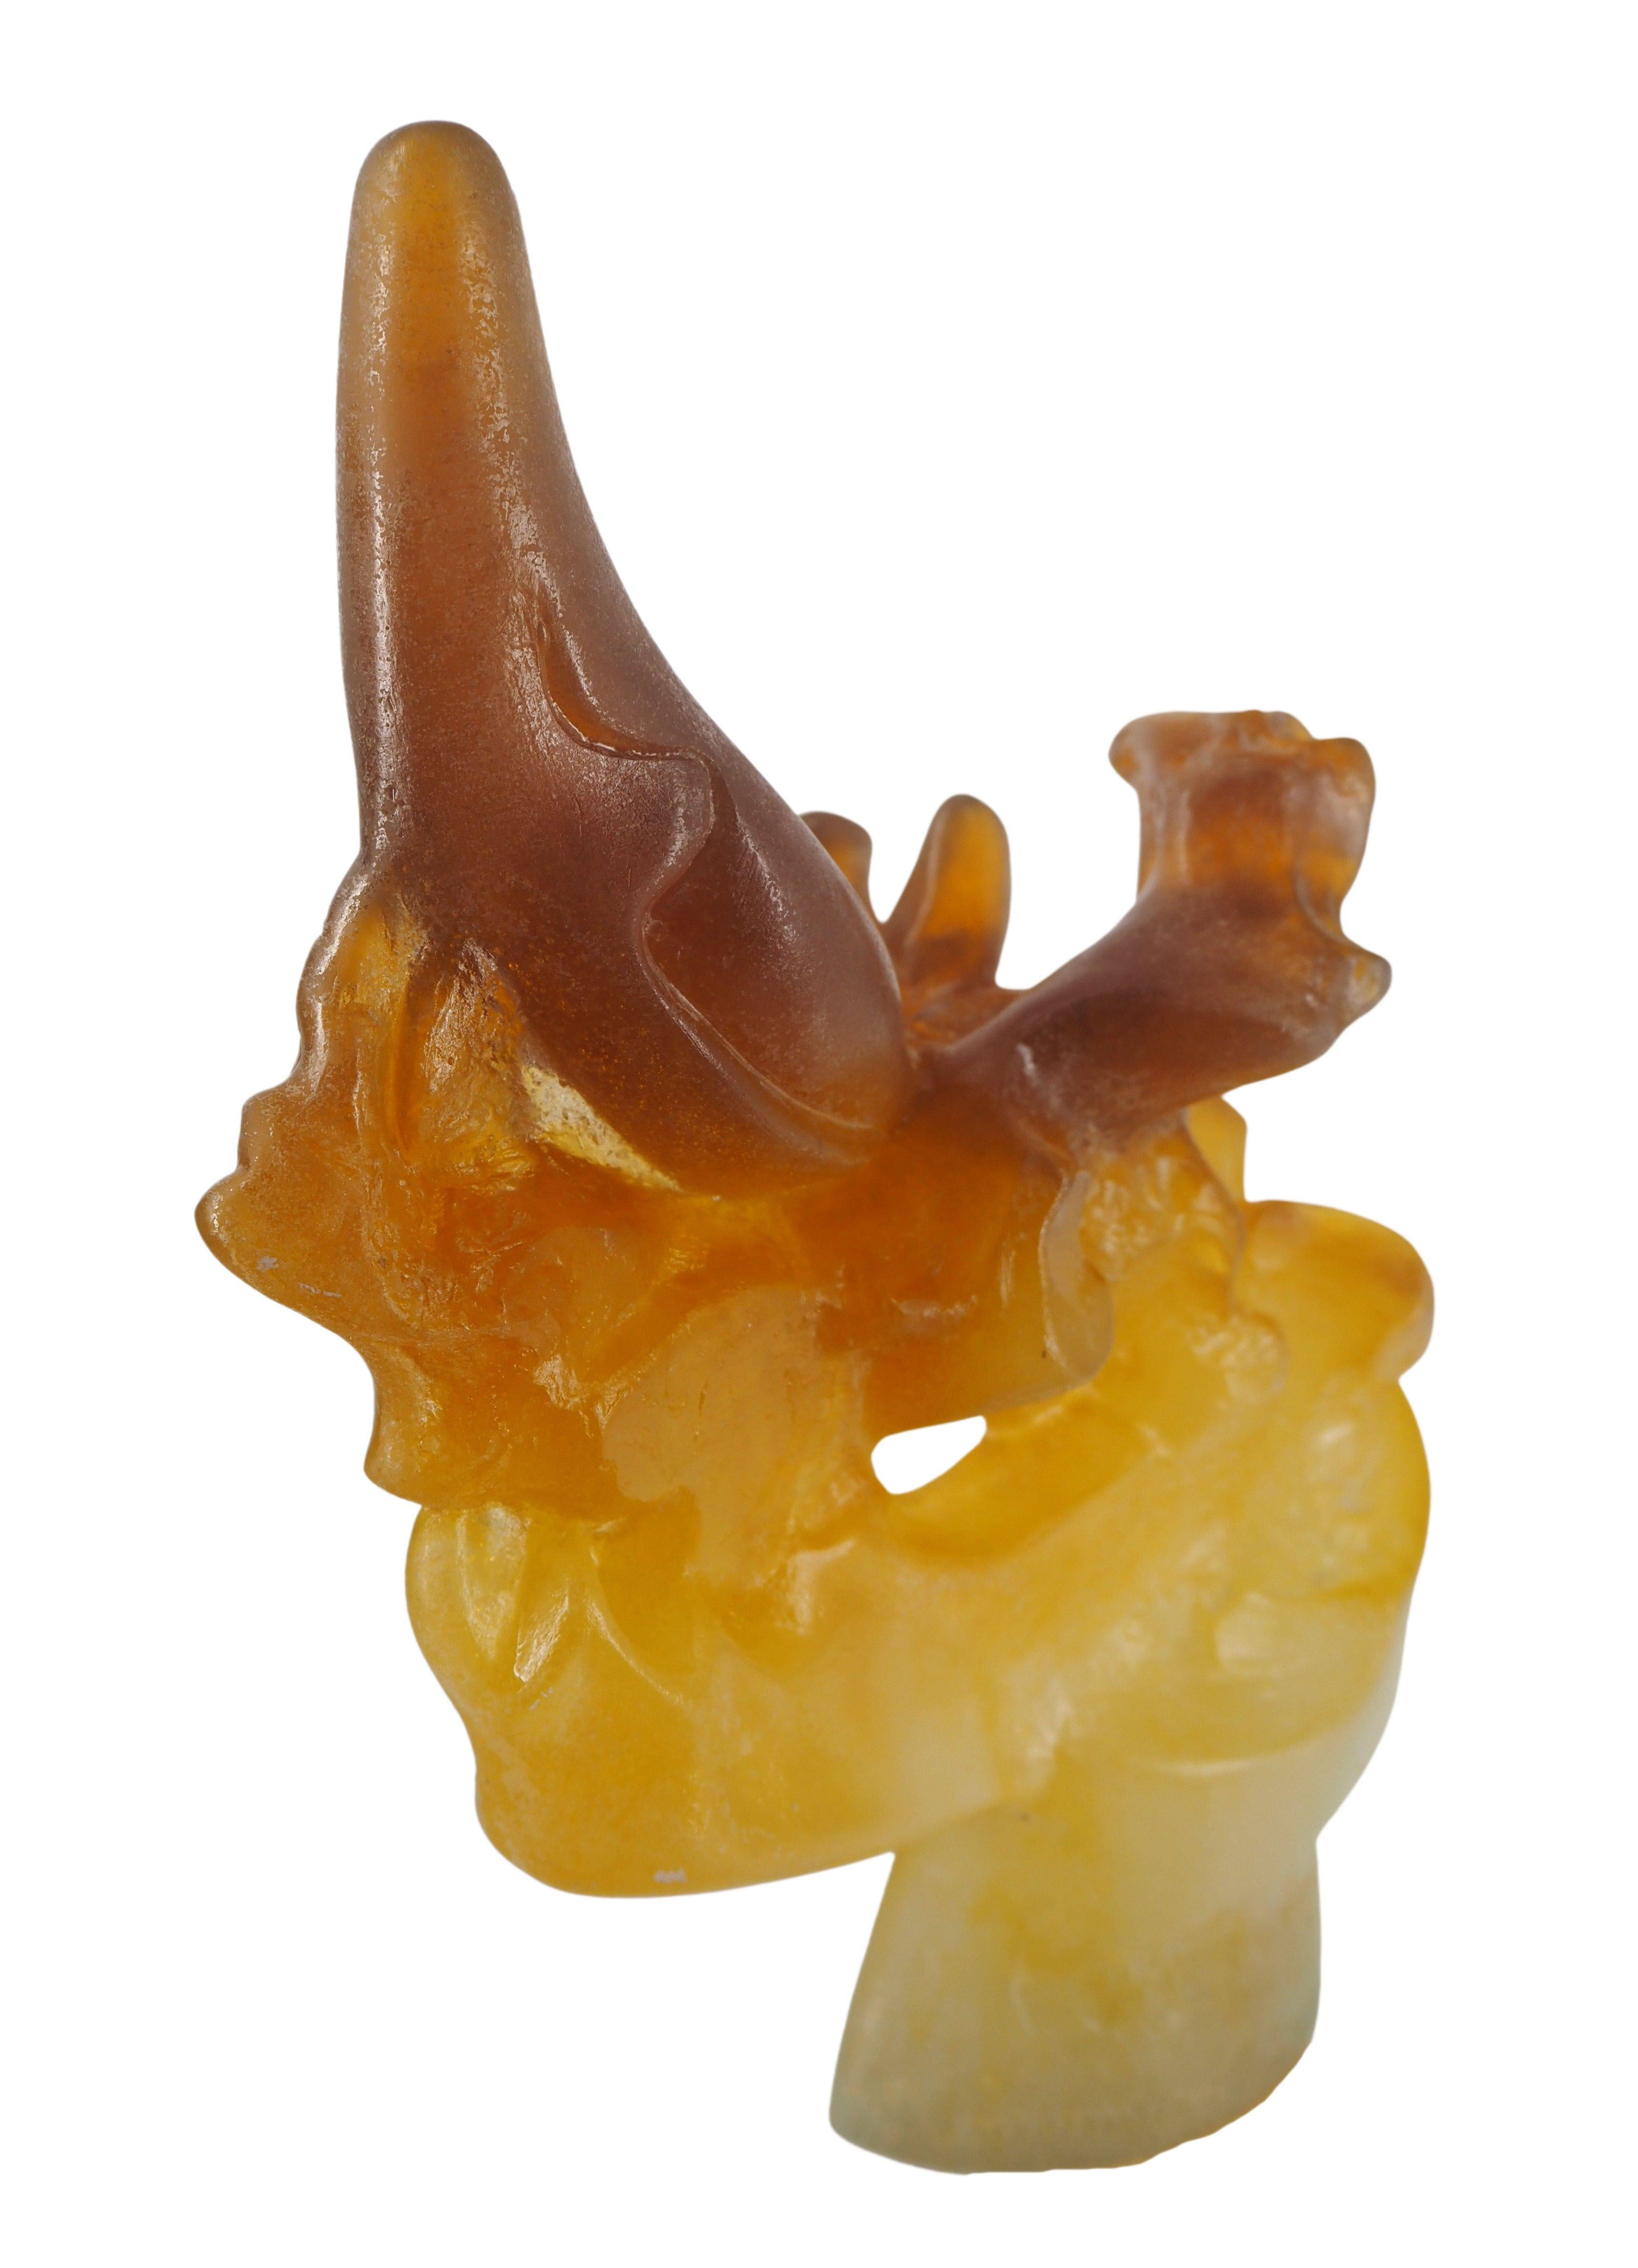 Salvador Dali (1904-1989) et Daum
Rhinocéros (Rhinocéros de Chippendale)

Original pate de verre bicolore jaune et brun opalescent
Éditée et fabriquée à la main par la cristallerie Daum en 1972
Signé dans le verre
Limité à 150 exemplaires